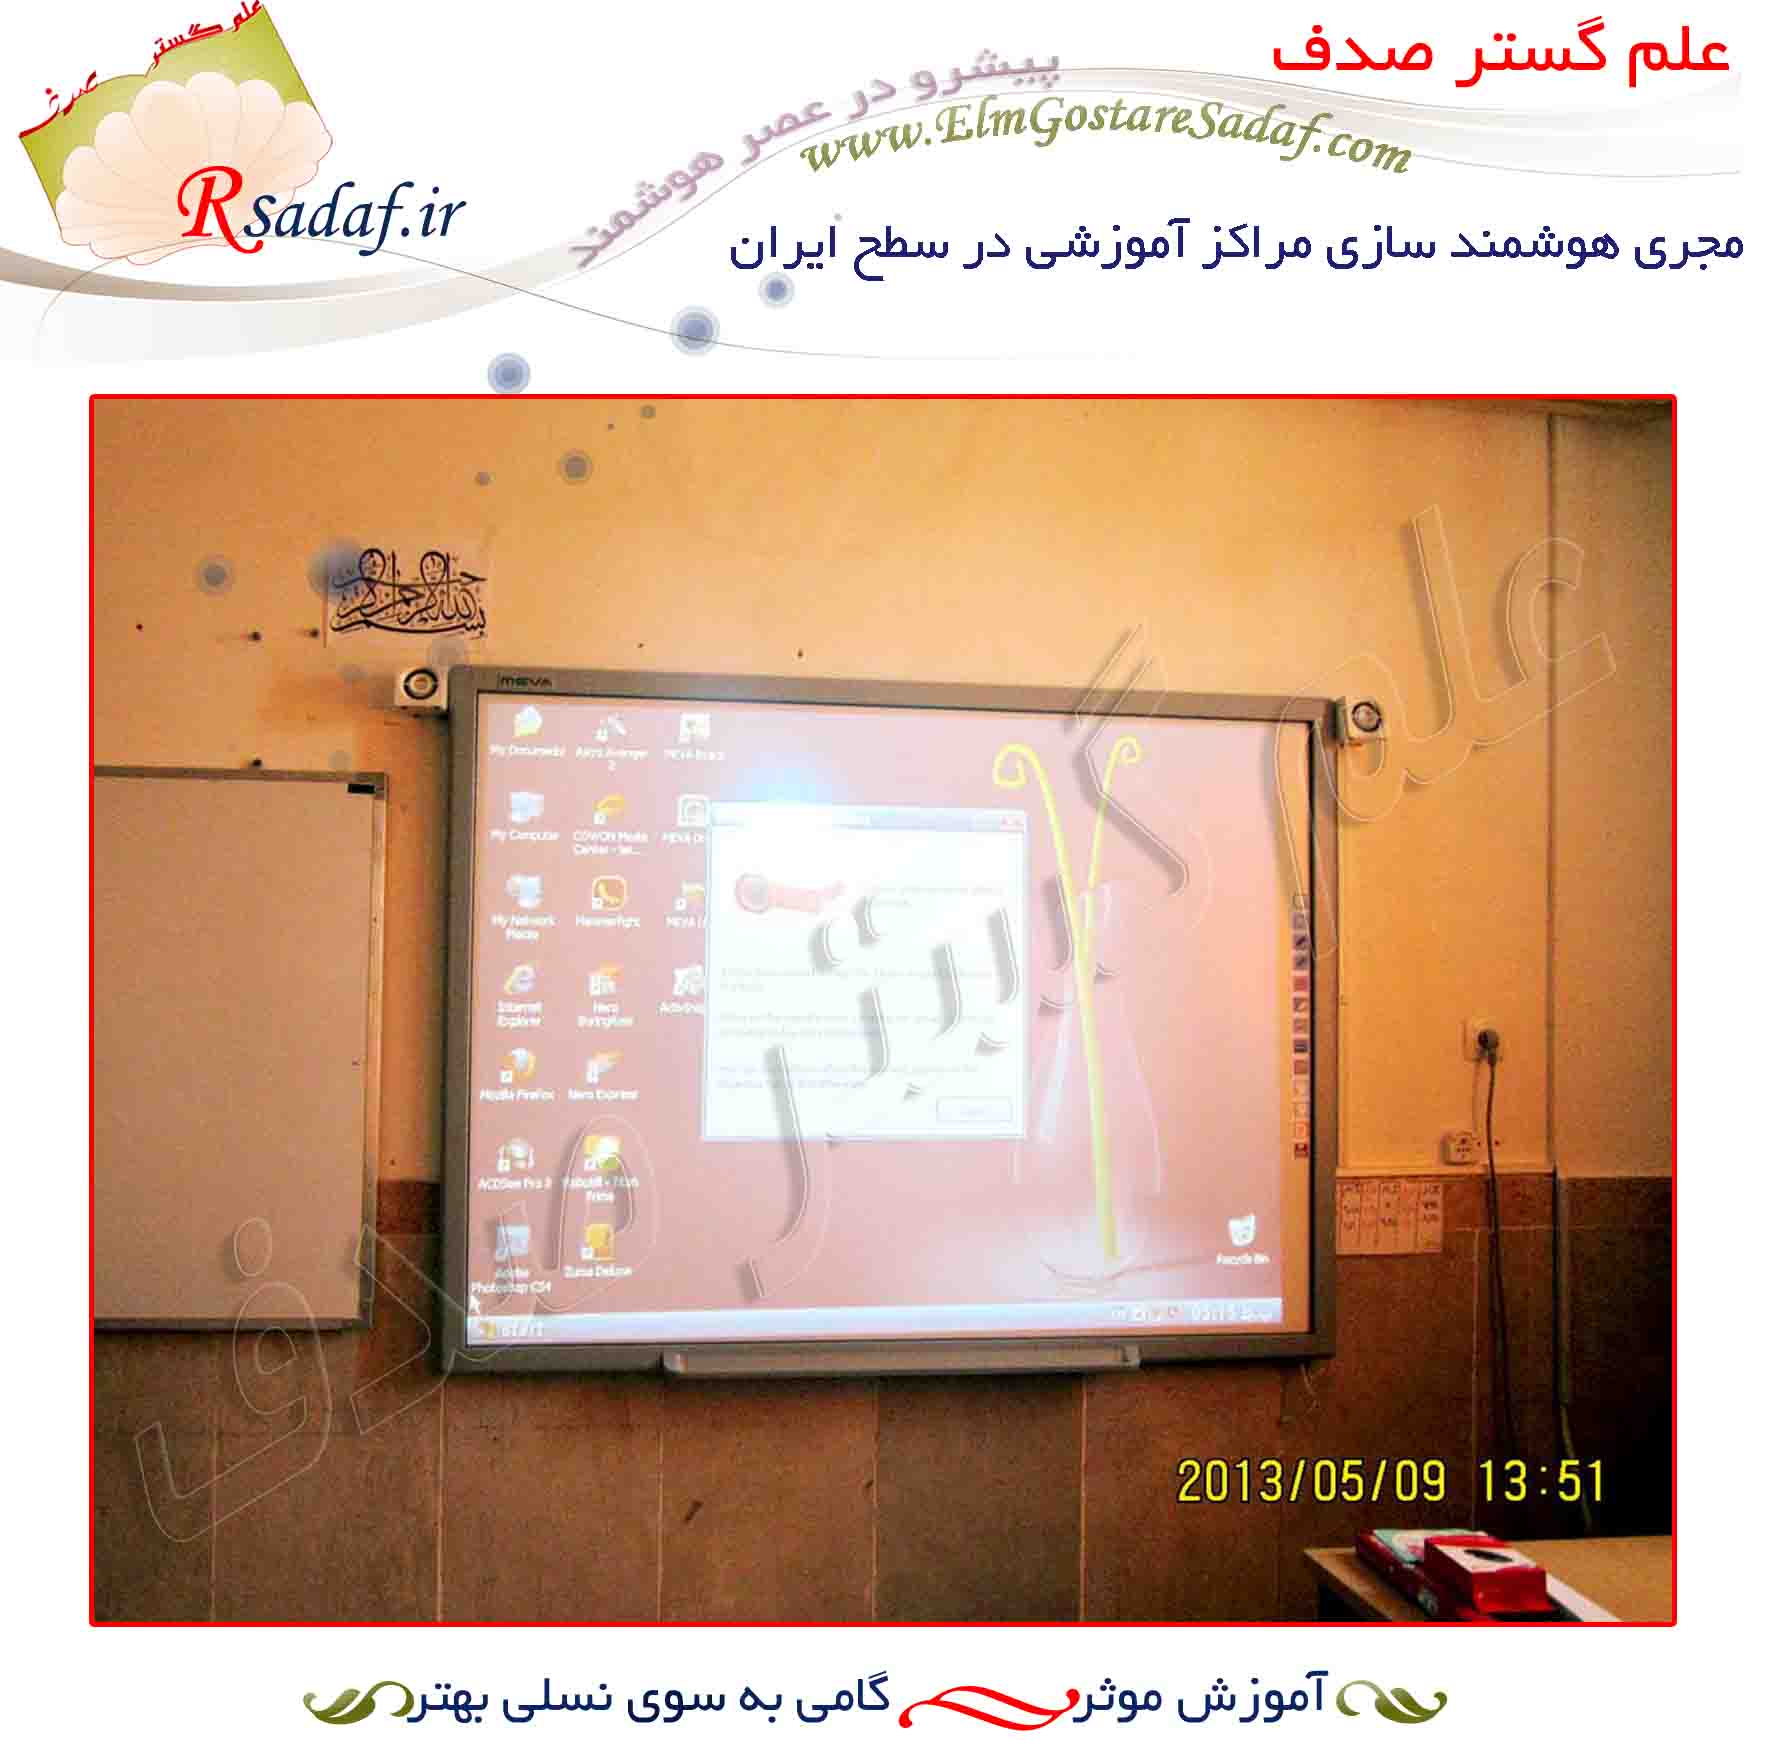 مدرسه دولتي شاهد قائم شهر هشتگرد (استان البرز)